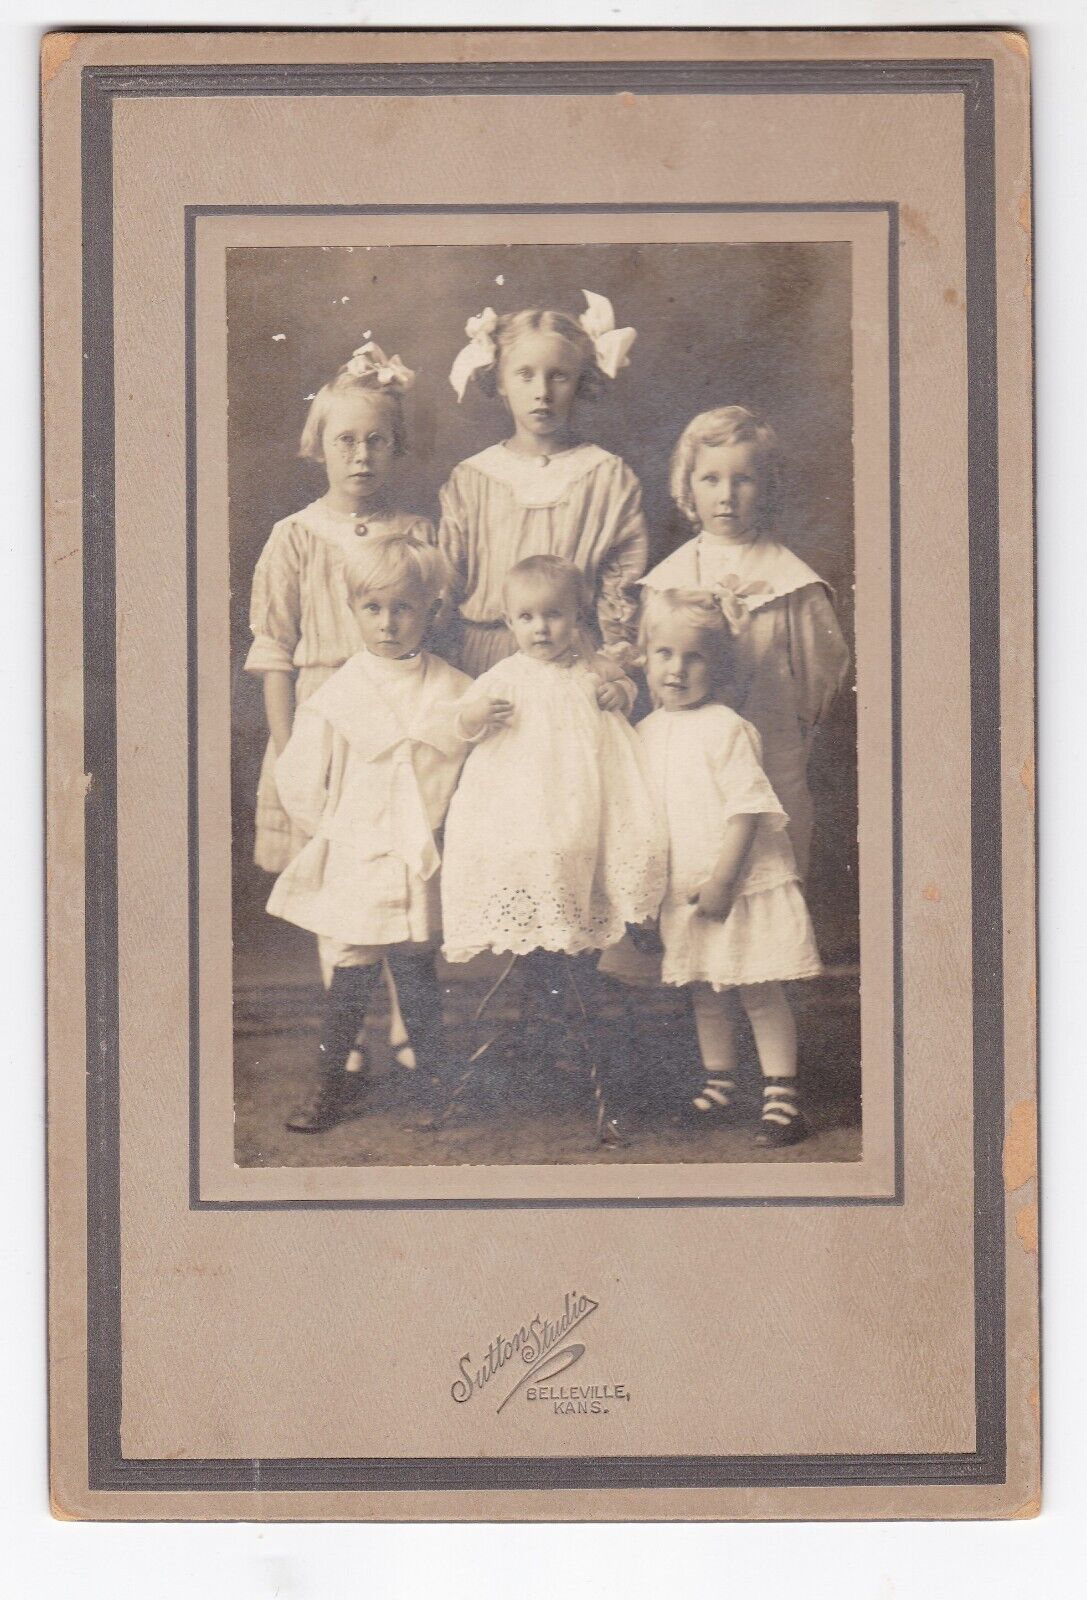 1912 BELLEVILLE KANSAS SUTTON STUDIO HALLAS BOY & GIRLS VINTAGE CABINET CARD KS